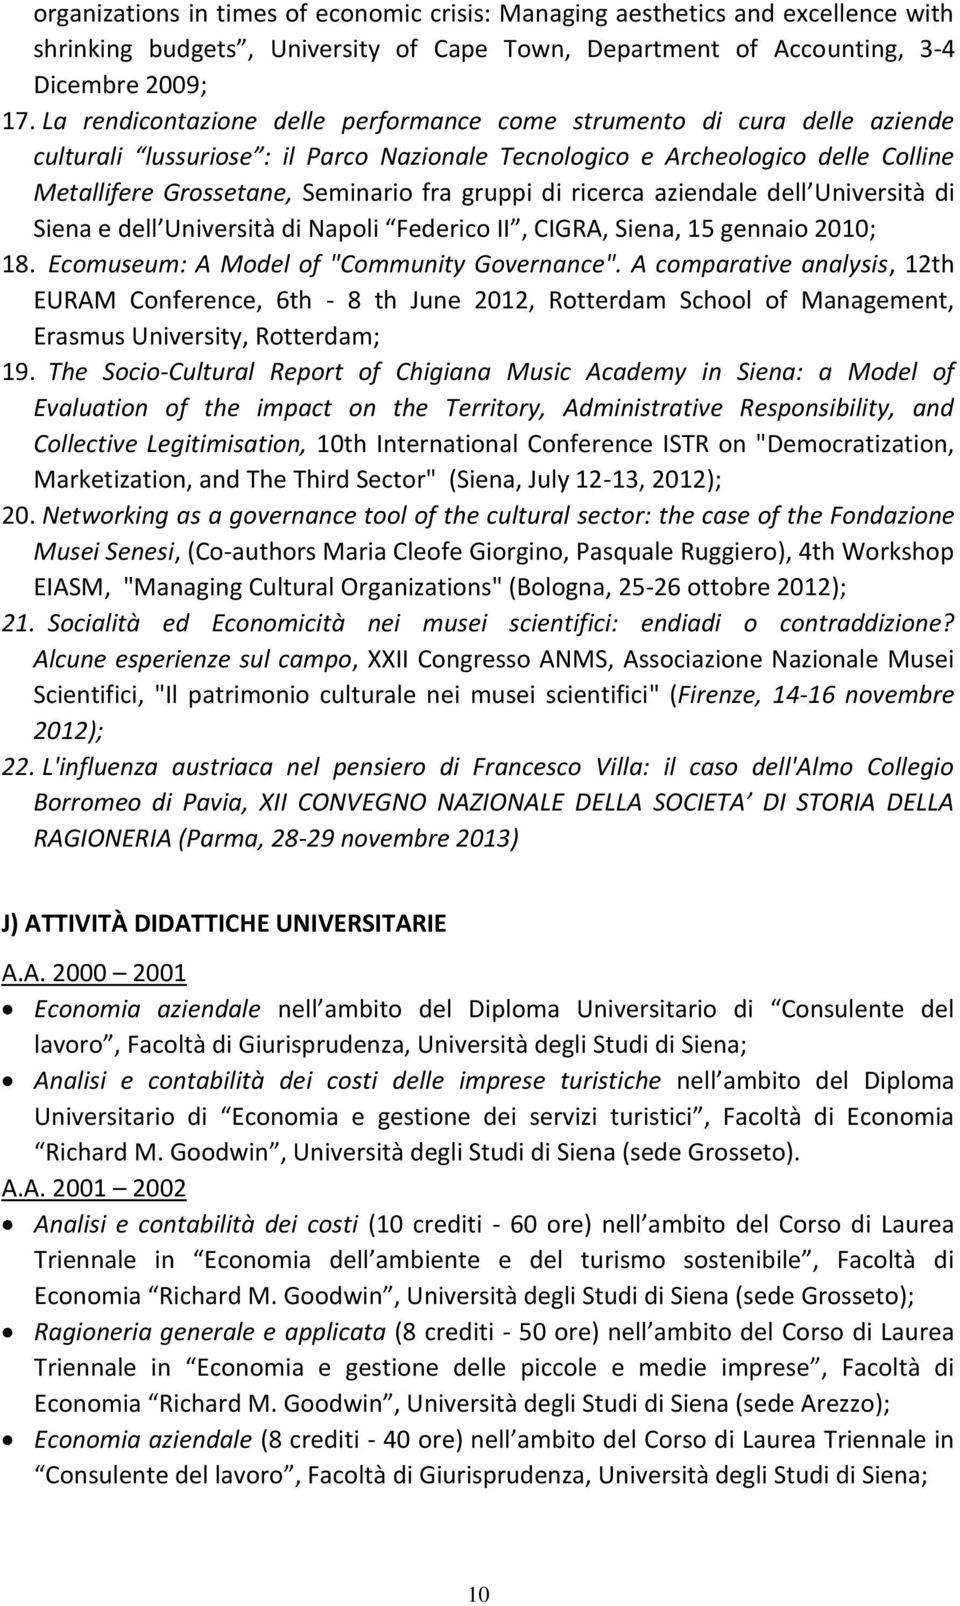 gruppi di ricerca aziendale dell Università di Siena e dell Università di Napoli Federico II, CIGRA, Siena, 15 gennaio 2010; 18. Ecomuseum: A Model of "Community Governance".